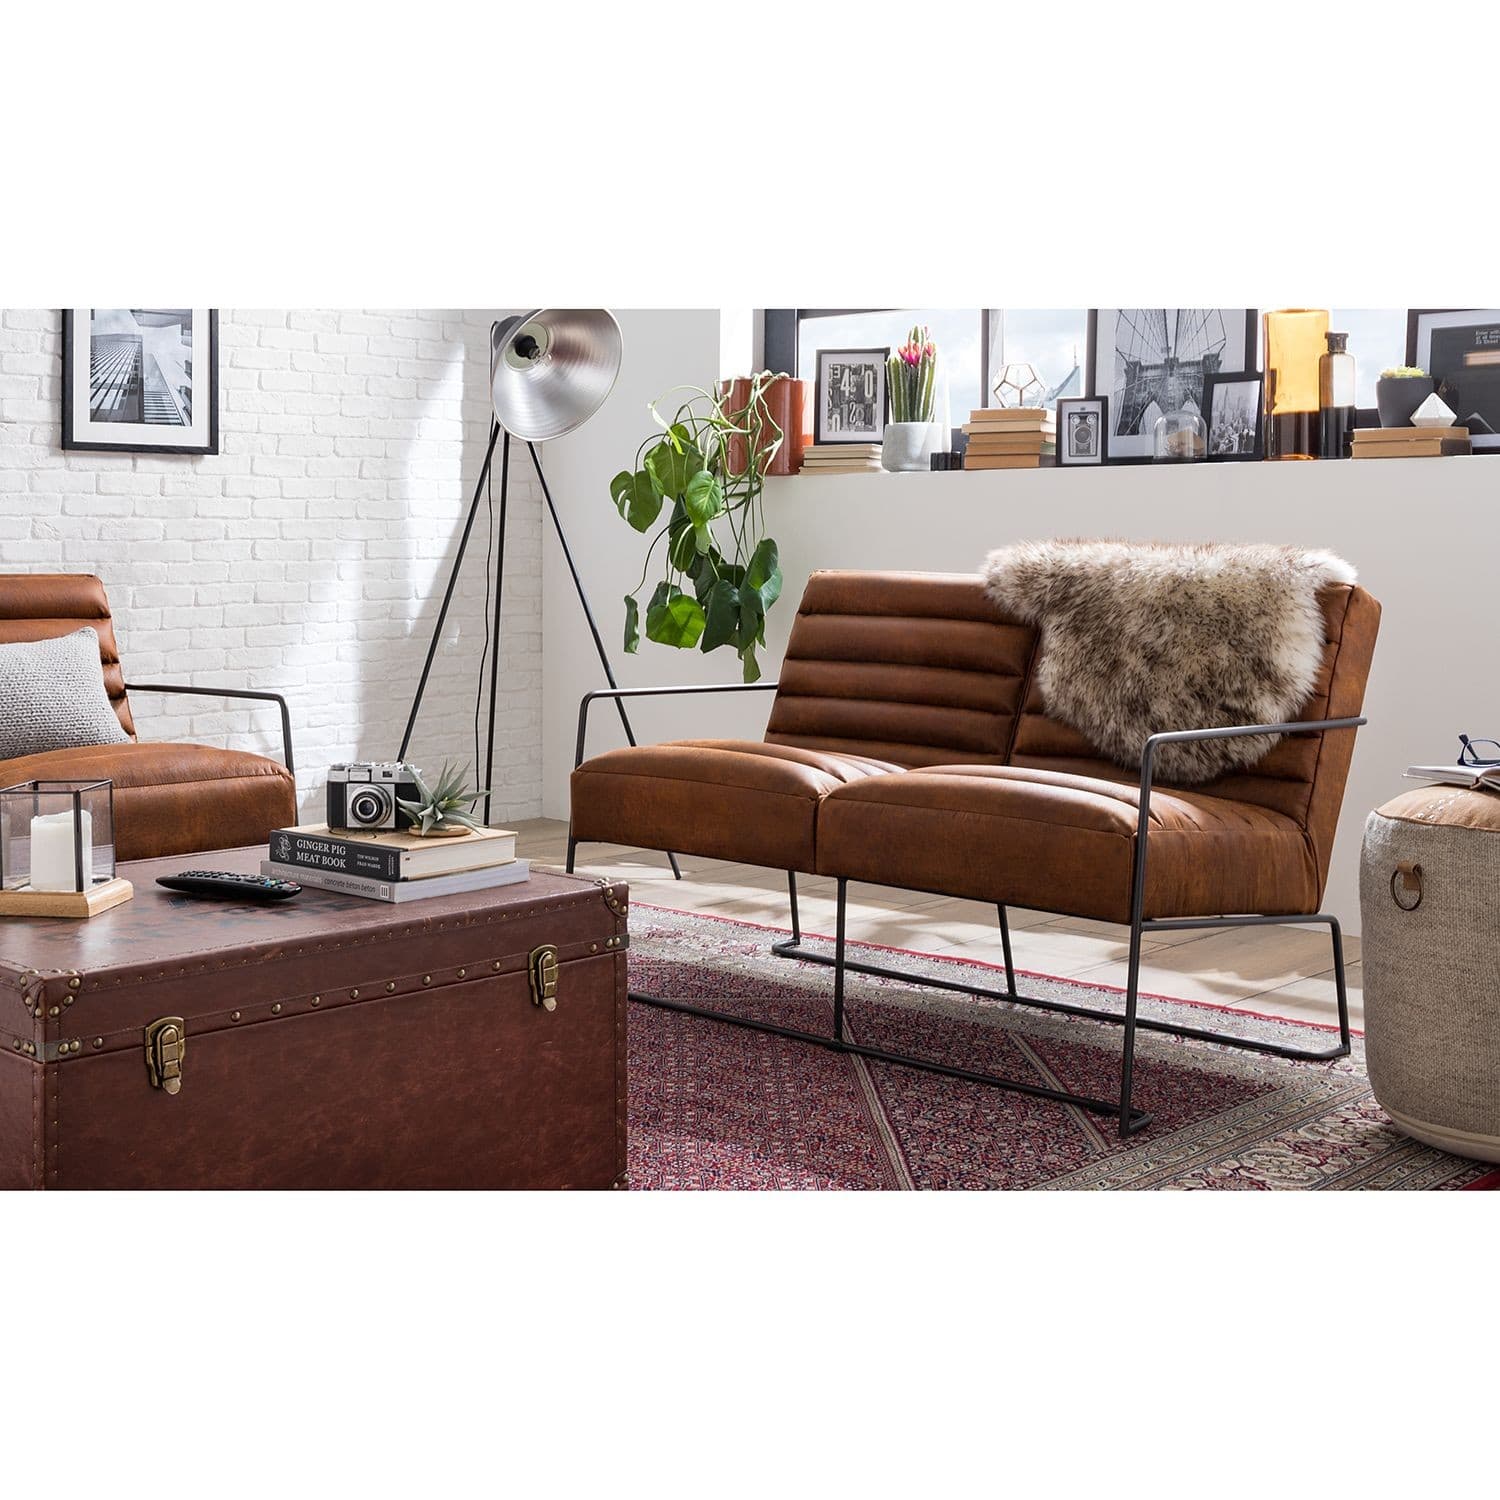 ROGER II sofa, leather upholstery